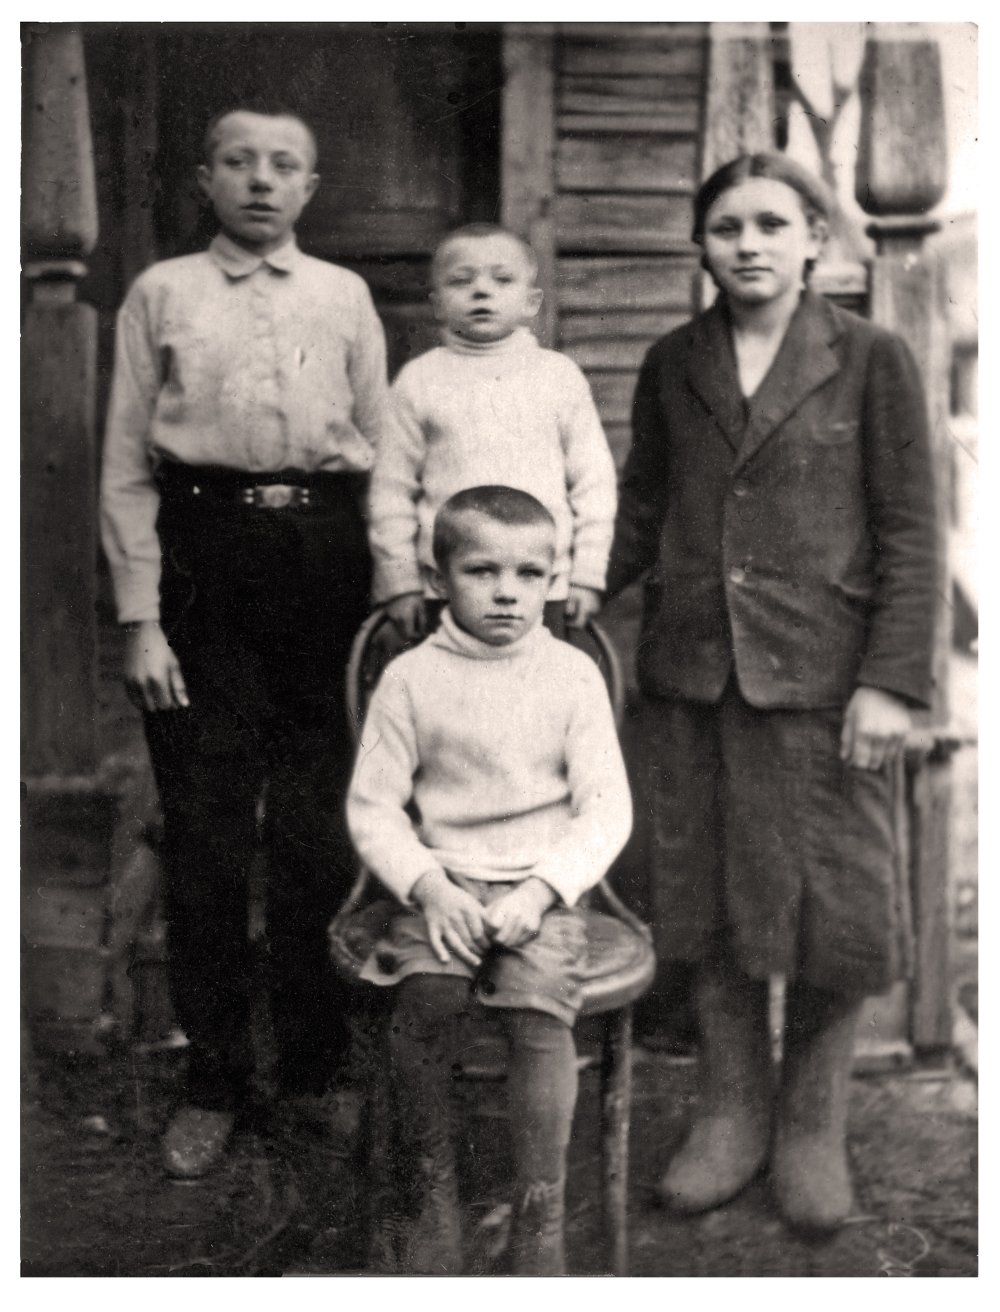 Валентин, Борис, Зоя и Юрий Гагарины (будущий космонавт сидит на стуле). Деревня Клушино, 1938 год.